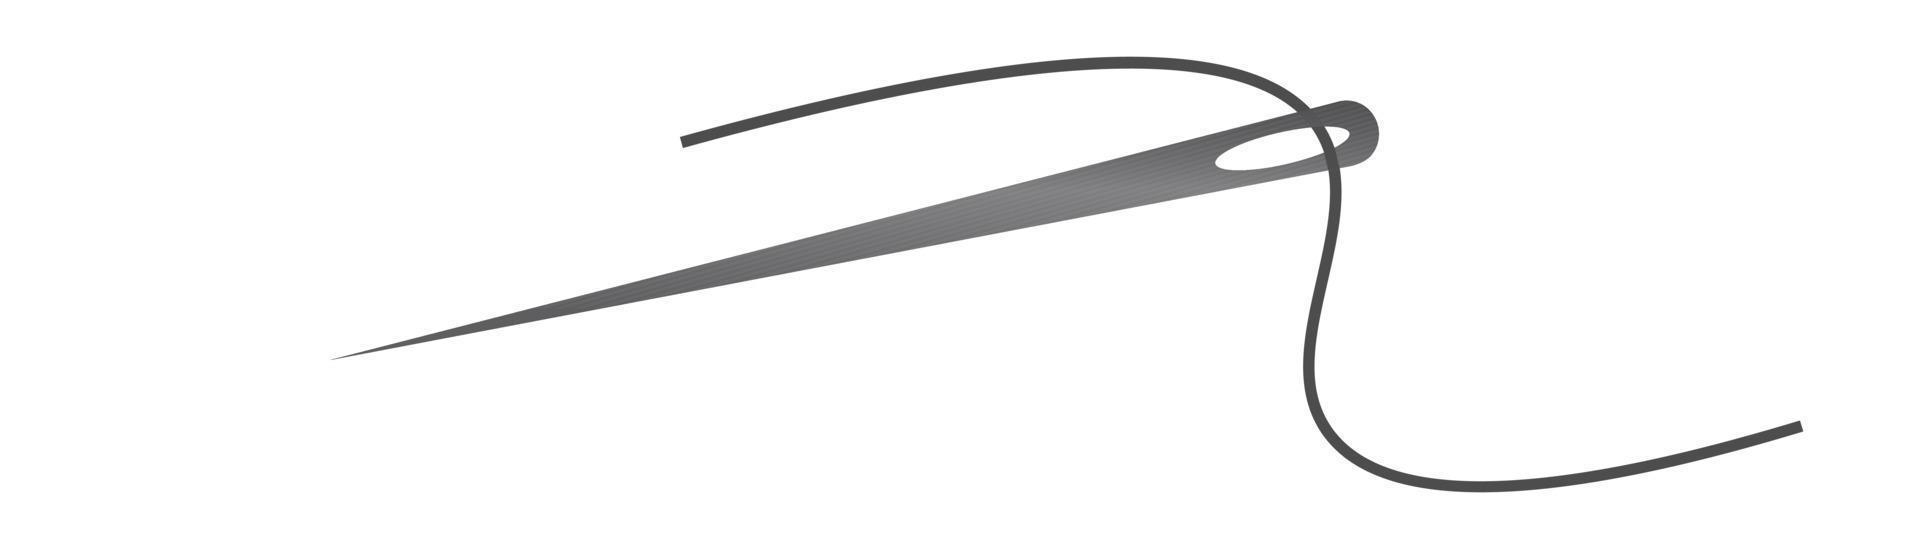 vetor de ícone de silhueta de agulha e linha. logotipo de alfaiate com símbolo de agulha e linha curva, ferramenta de bordado de alfaiate e sapateiro, elemento de costura. agulha e linha de cor escura.